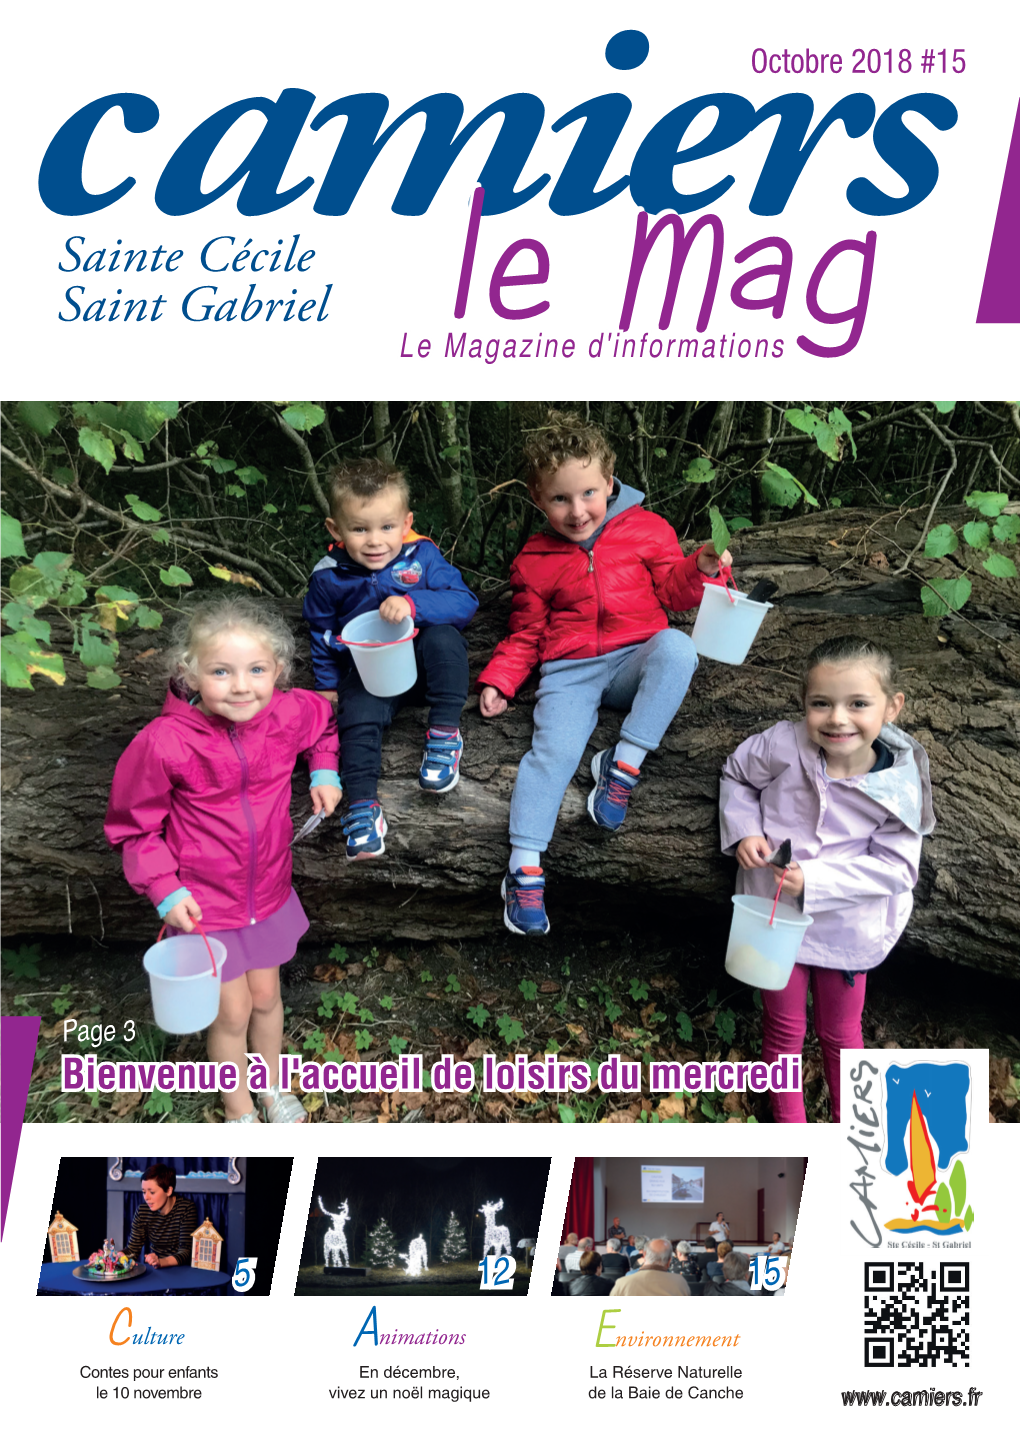 Sainte Cécile Saint Gabriel Le Mag Le Magazine D'informations